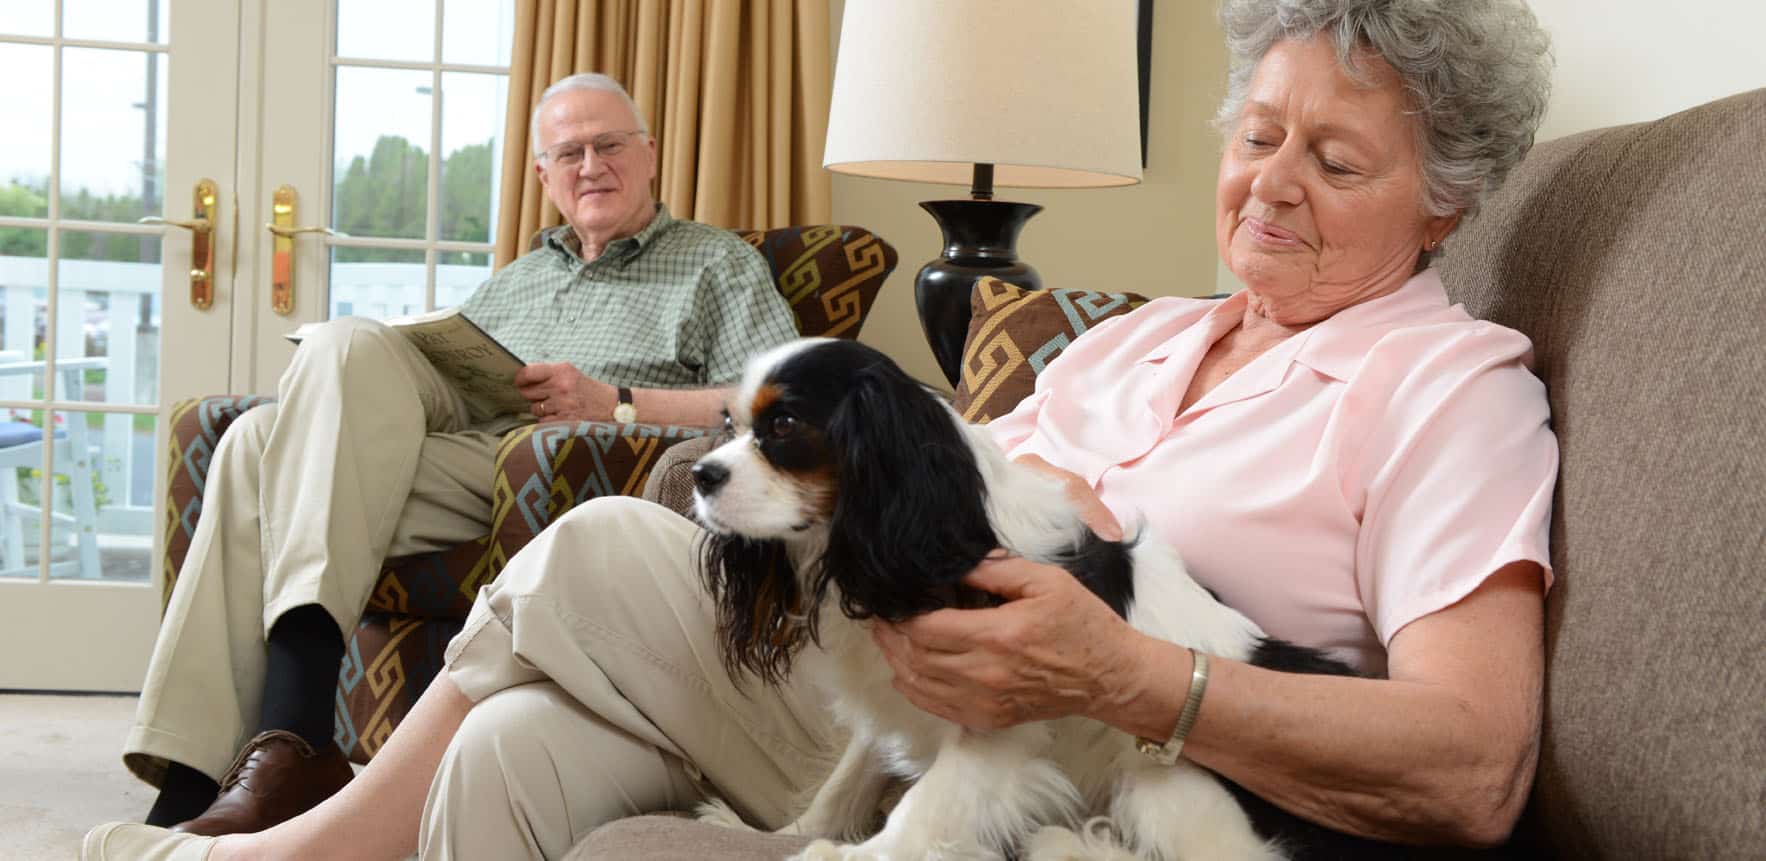 A senior sitting with a dog